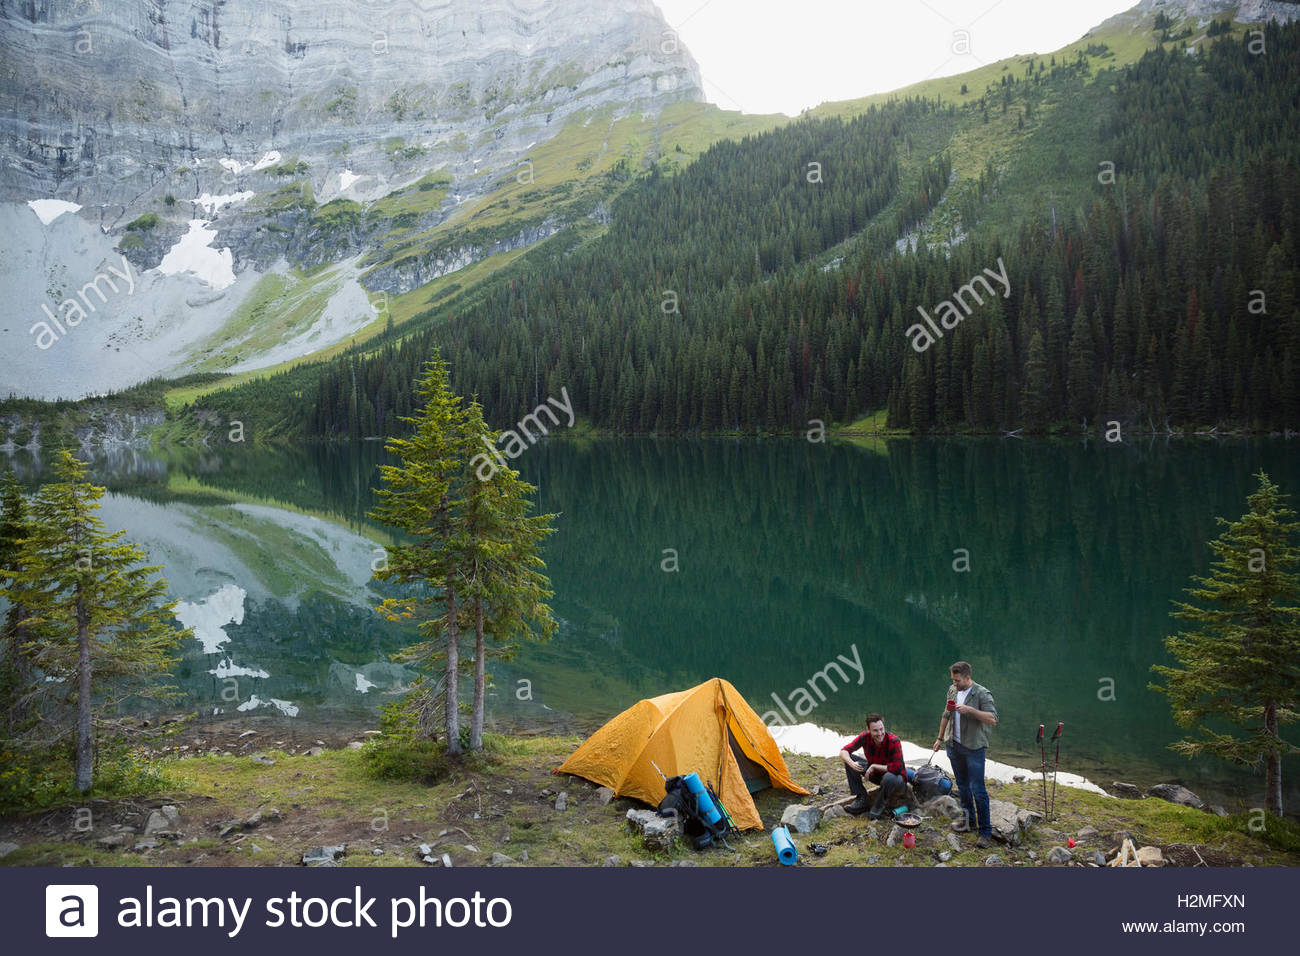 Amigos varones camping camping lago de montaña remotos Foto de stock